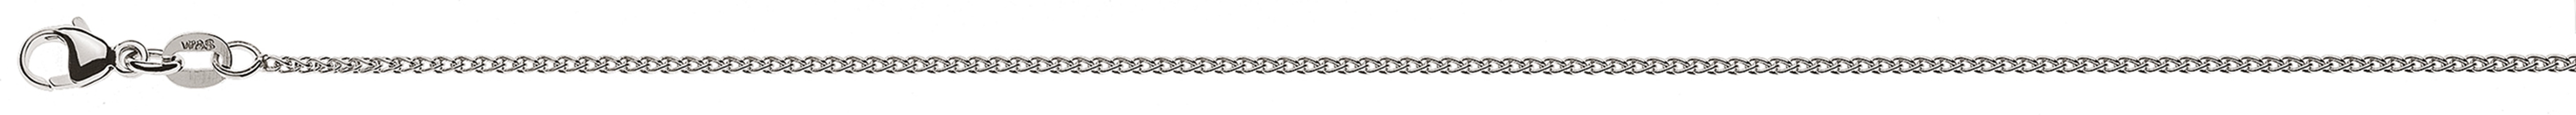 AURONOS Style Halskette Weissgold 9K Zopfkette 50cm 1.2mm